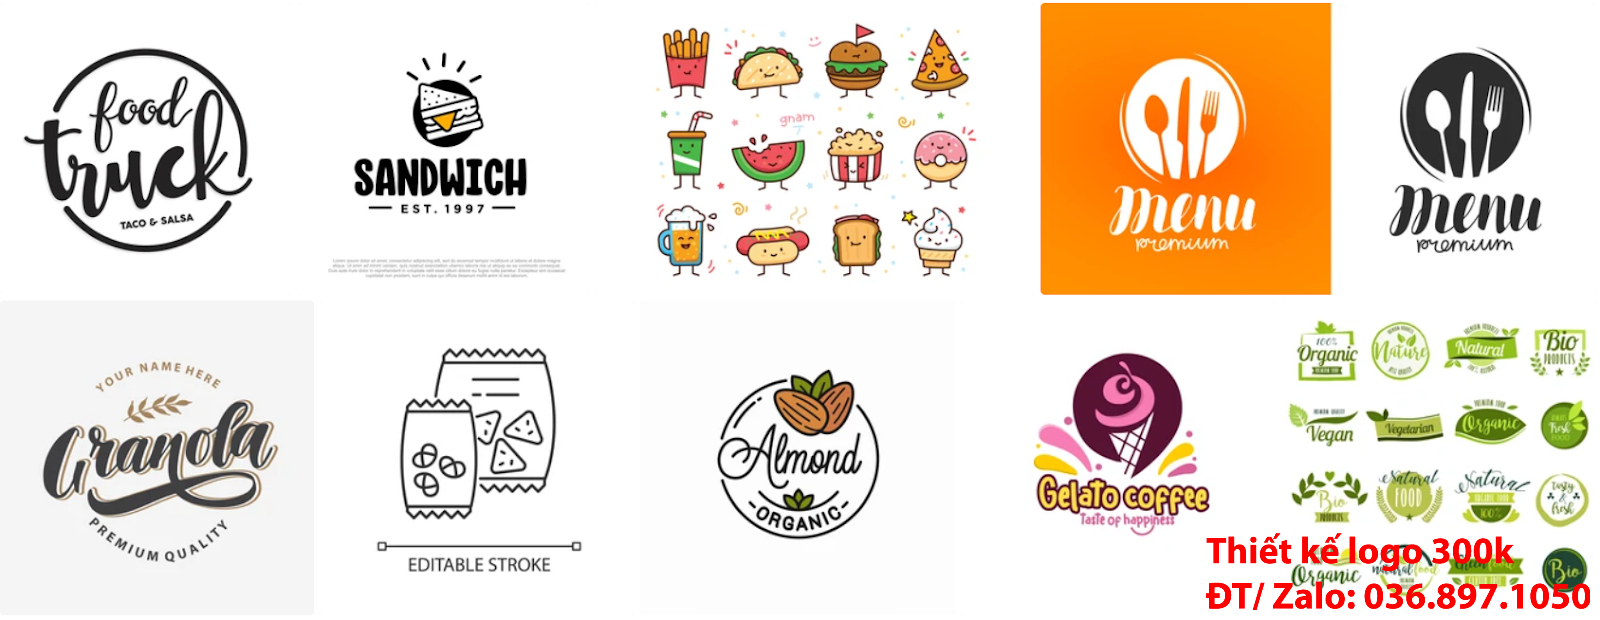 Tại Hà Nội cũng có công ty nhận thiết kế các thiết kế logo ăn vặt online đẹp uy tín chất lượng giá 300k